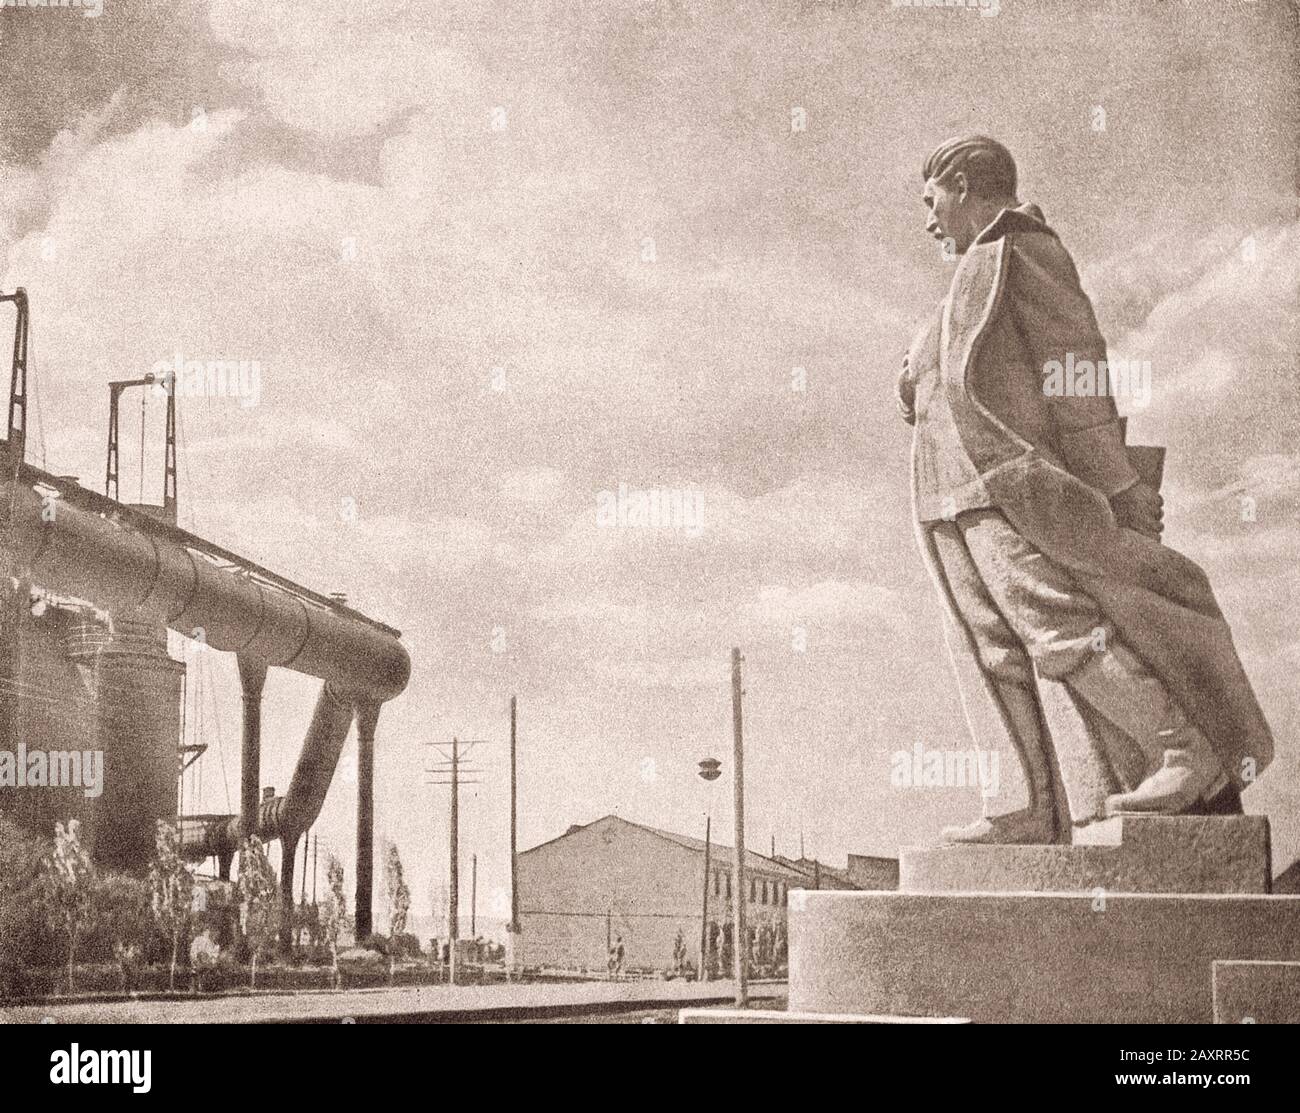 Ejército Rojo. Del libro de propaganda soviético de 1937. Monumento a Stalin sobre el fondo de una empresa industrial. Foto de stock